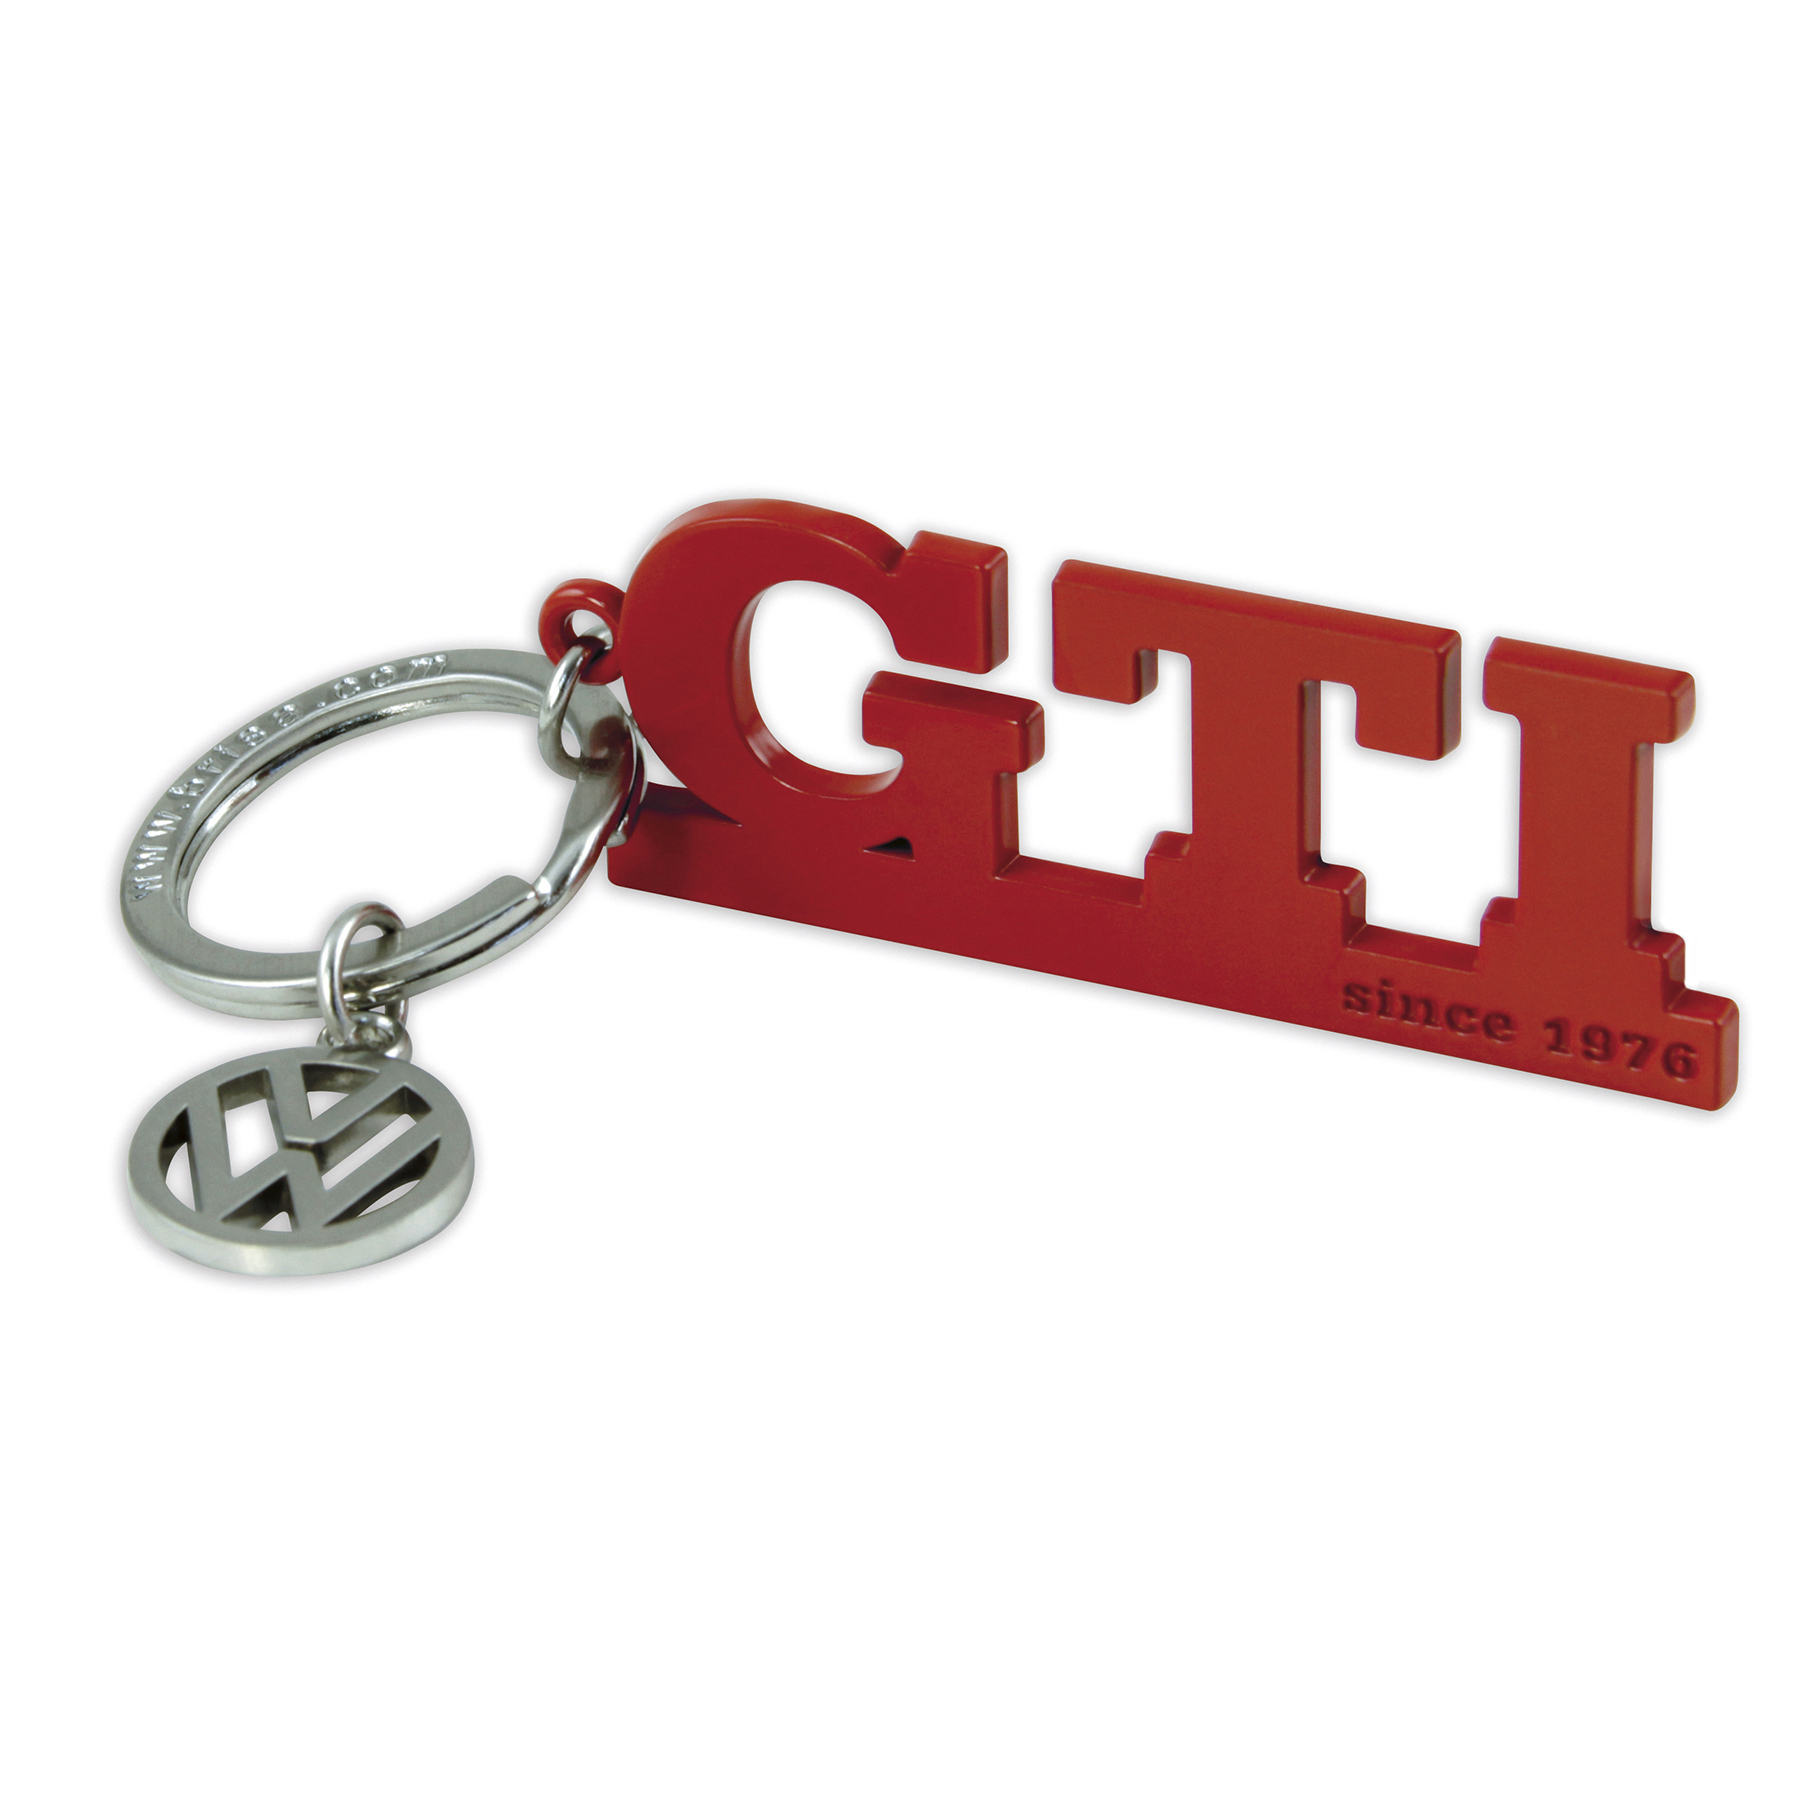 Original VW GTI Schlüsselanhänger Anhänger für Schlüssel rot